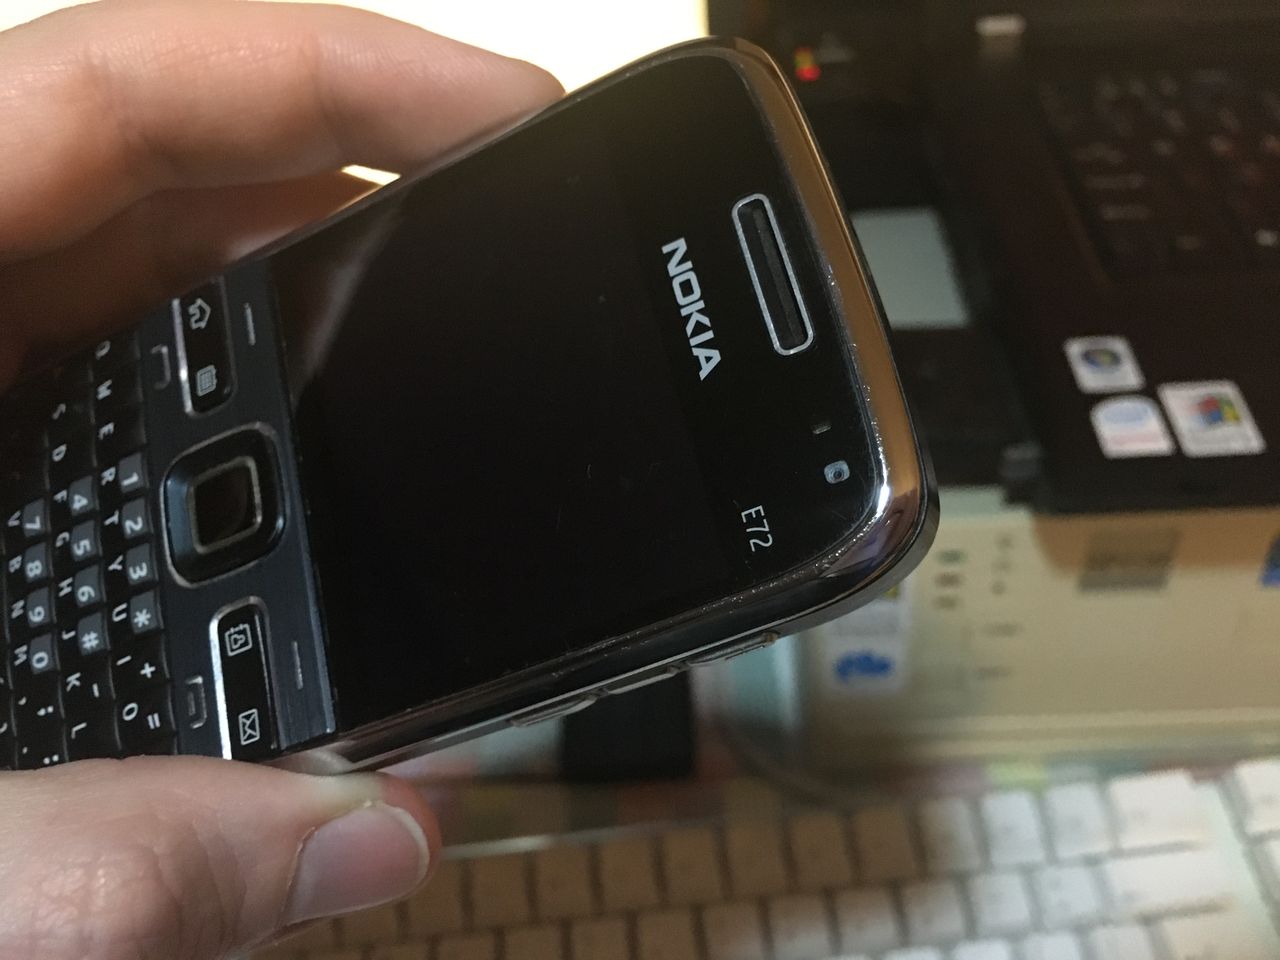 Nokia E72 z widoczną przednią kamerą